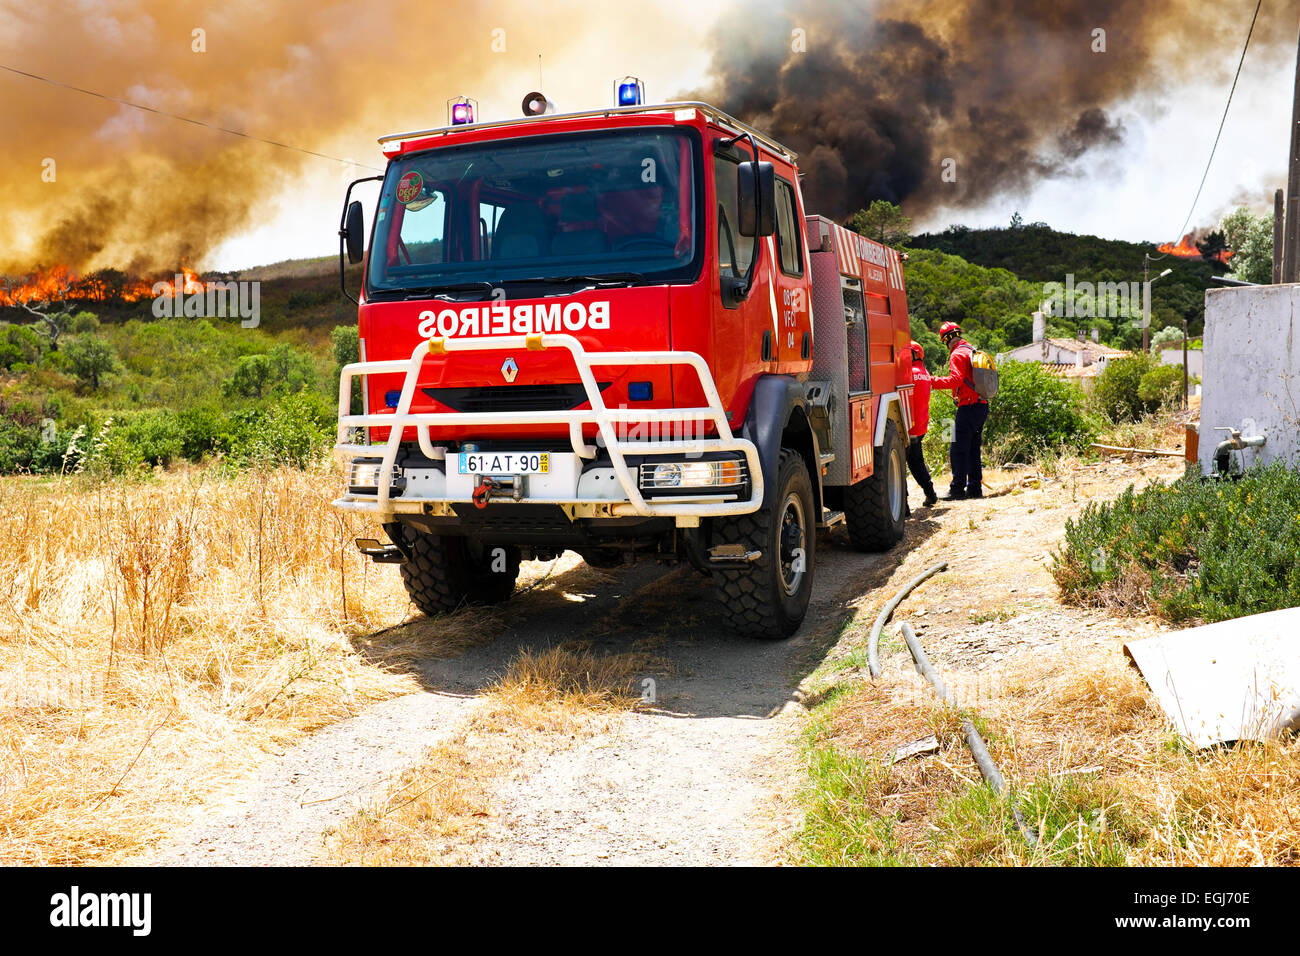 ALJEZUR - 6 juillet : Les pompiers combattant un énorme incendie dans le parc national près de Aljezur le 6/07/2013 au Portugal Banque D'Images